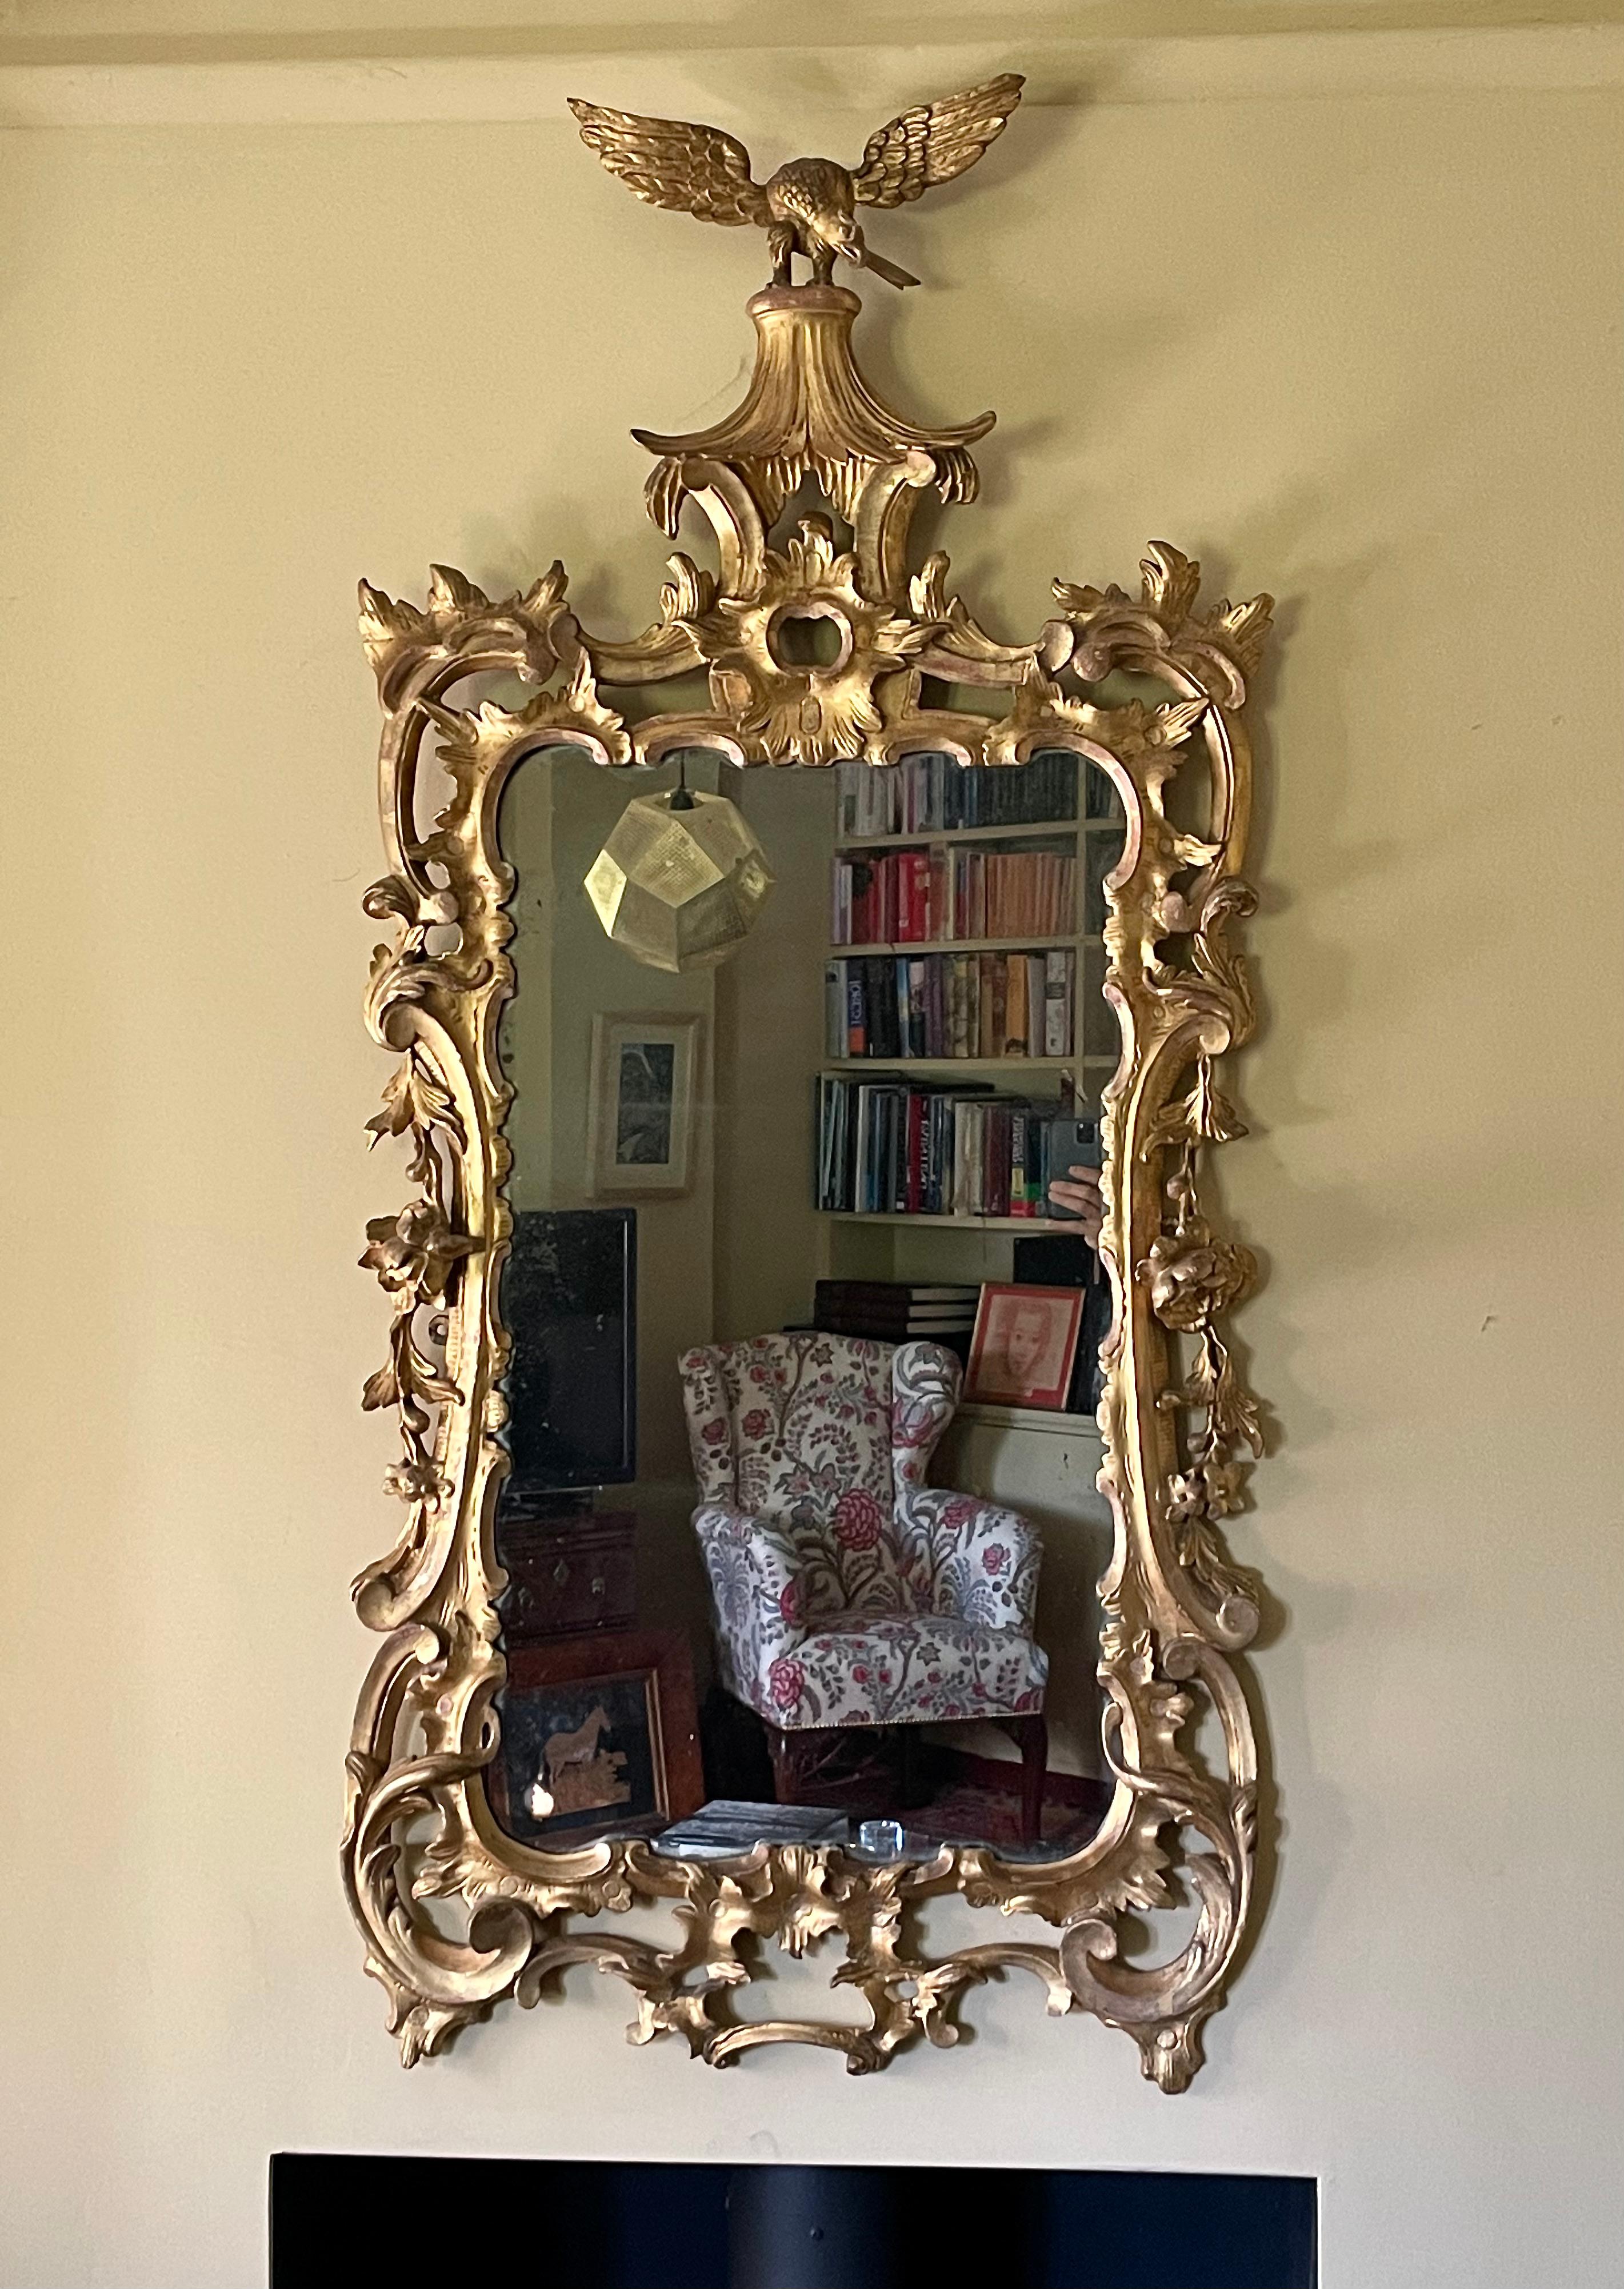 Ein feiner englischer geschnitzter und vergoldeter Gesso-Spiegel aus der Zeit Georgs III., ca. 1765.

Dieser außergewöhnliche Spiegel aus georgianischem Vergoldungsholz wird von einem ausgestellten Adler über einer chinesischen Pagode gekrönt. Der